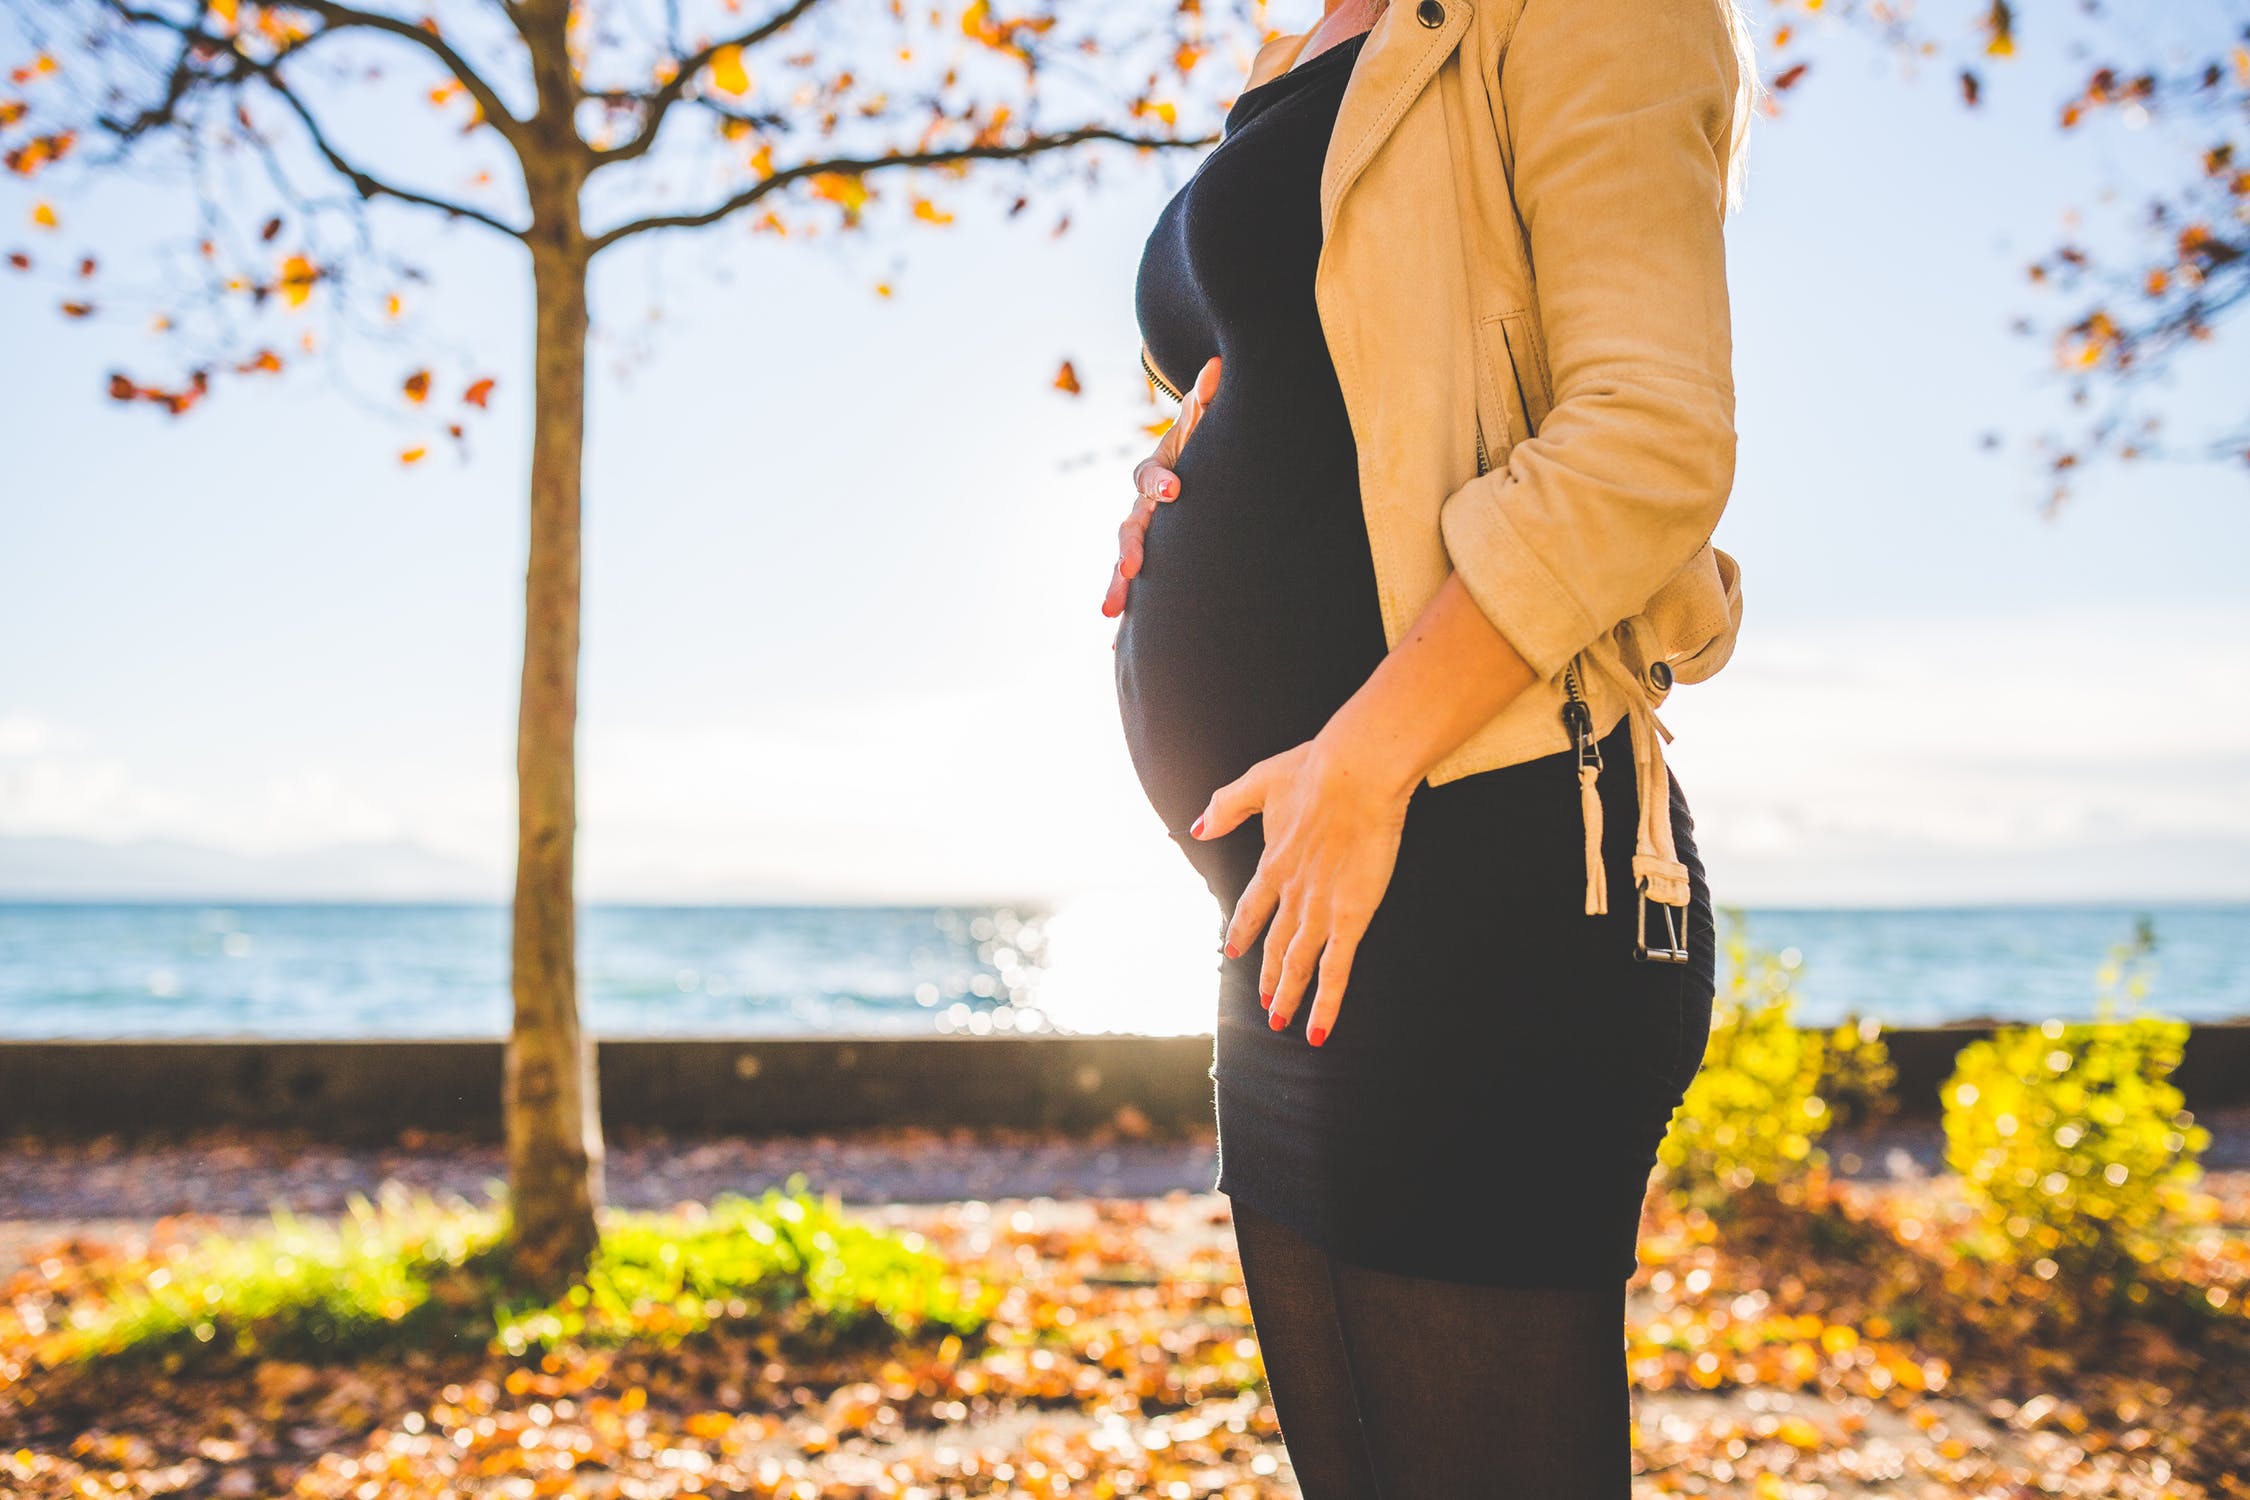 Съвети за здравословна и щастлива бременност